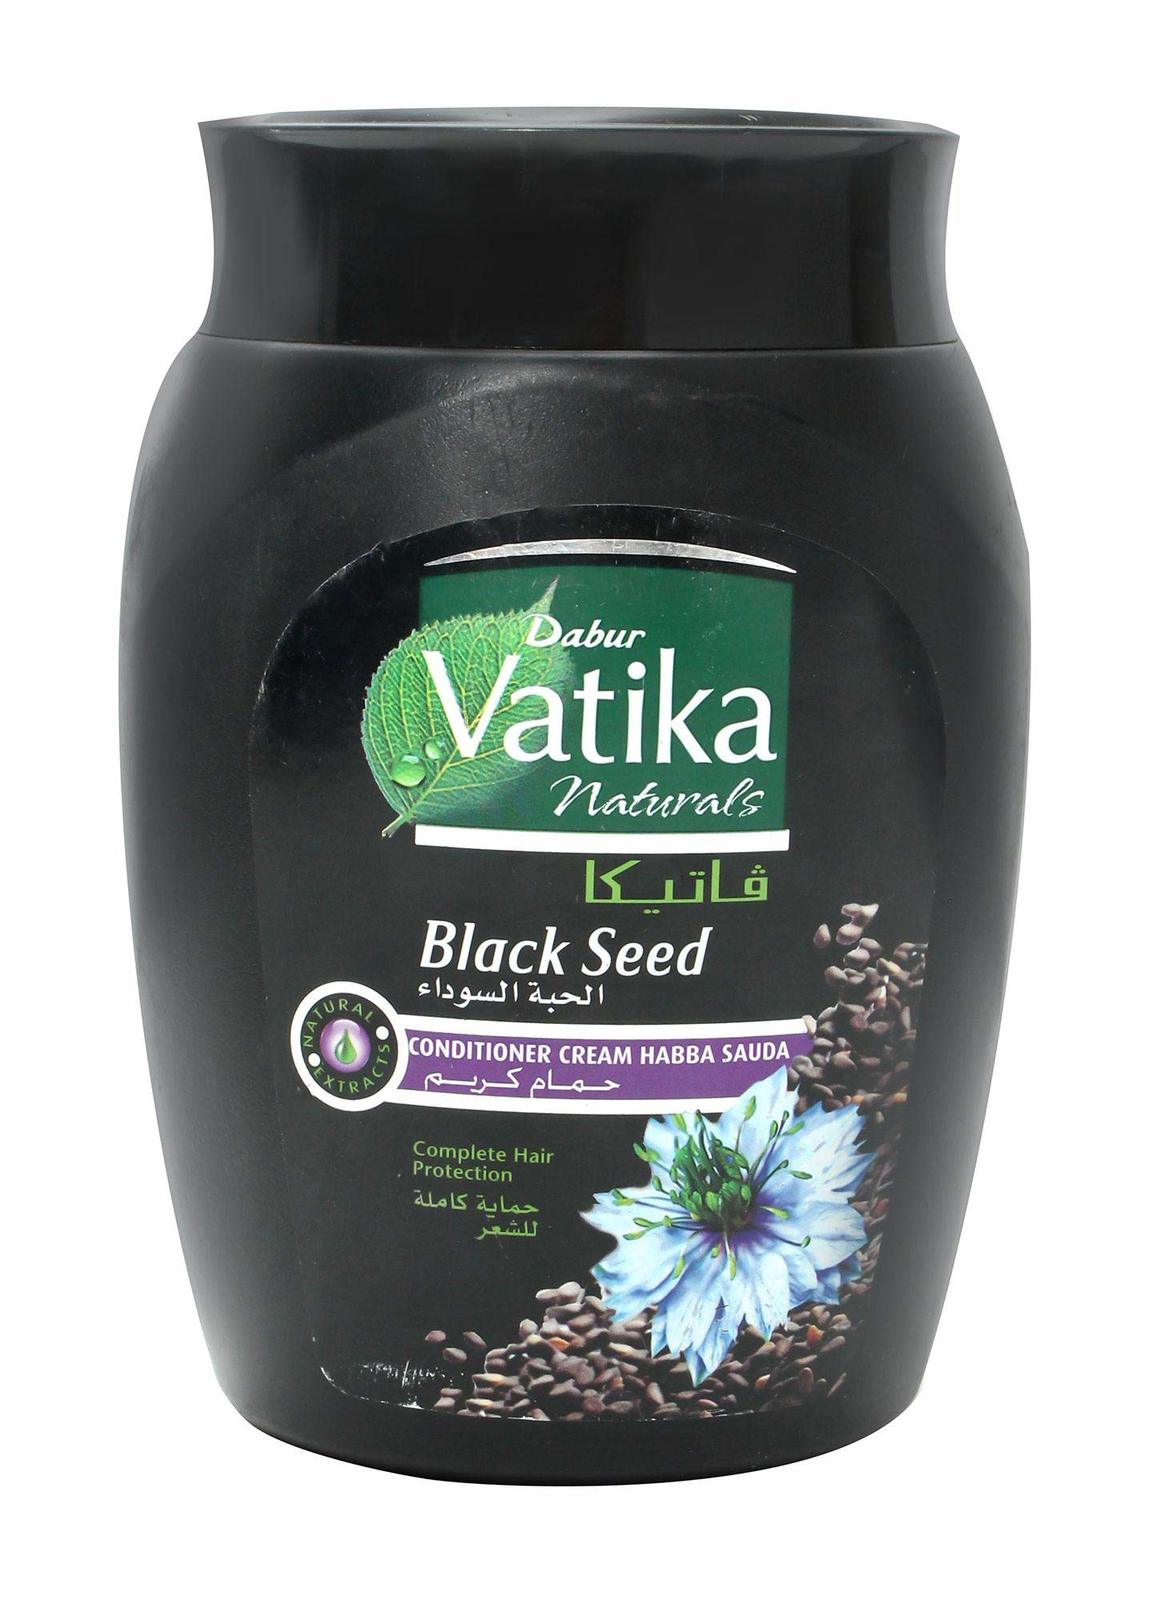 Dabur Vatika Conditioner Cream with Black Seed - 1 kg - $33.00